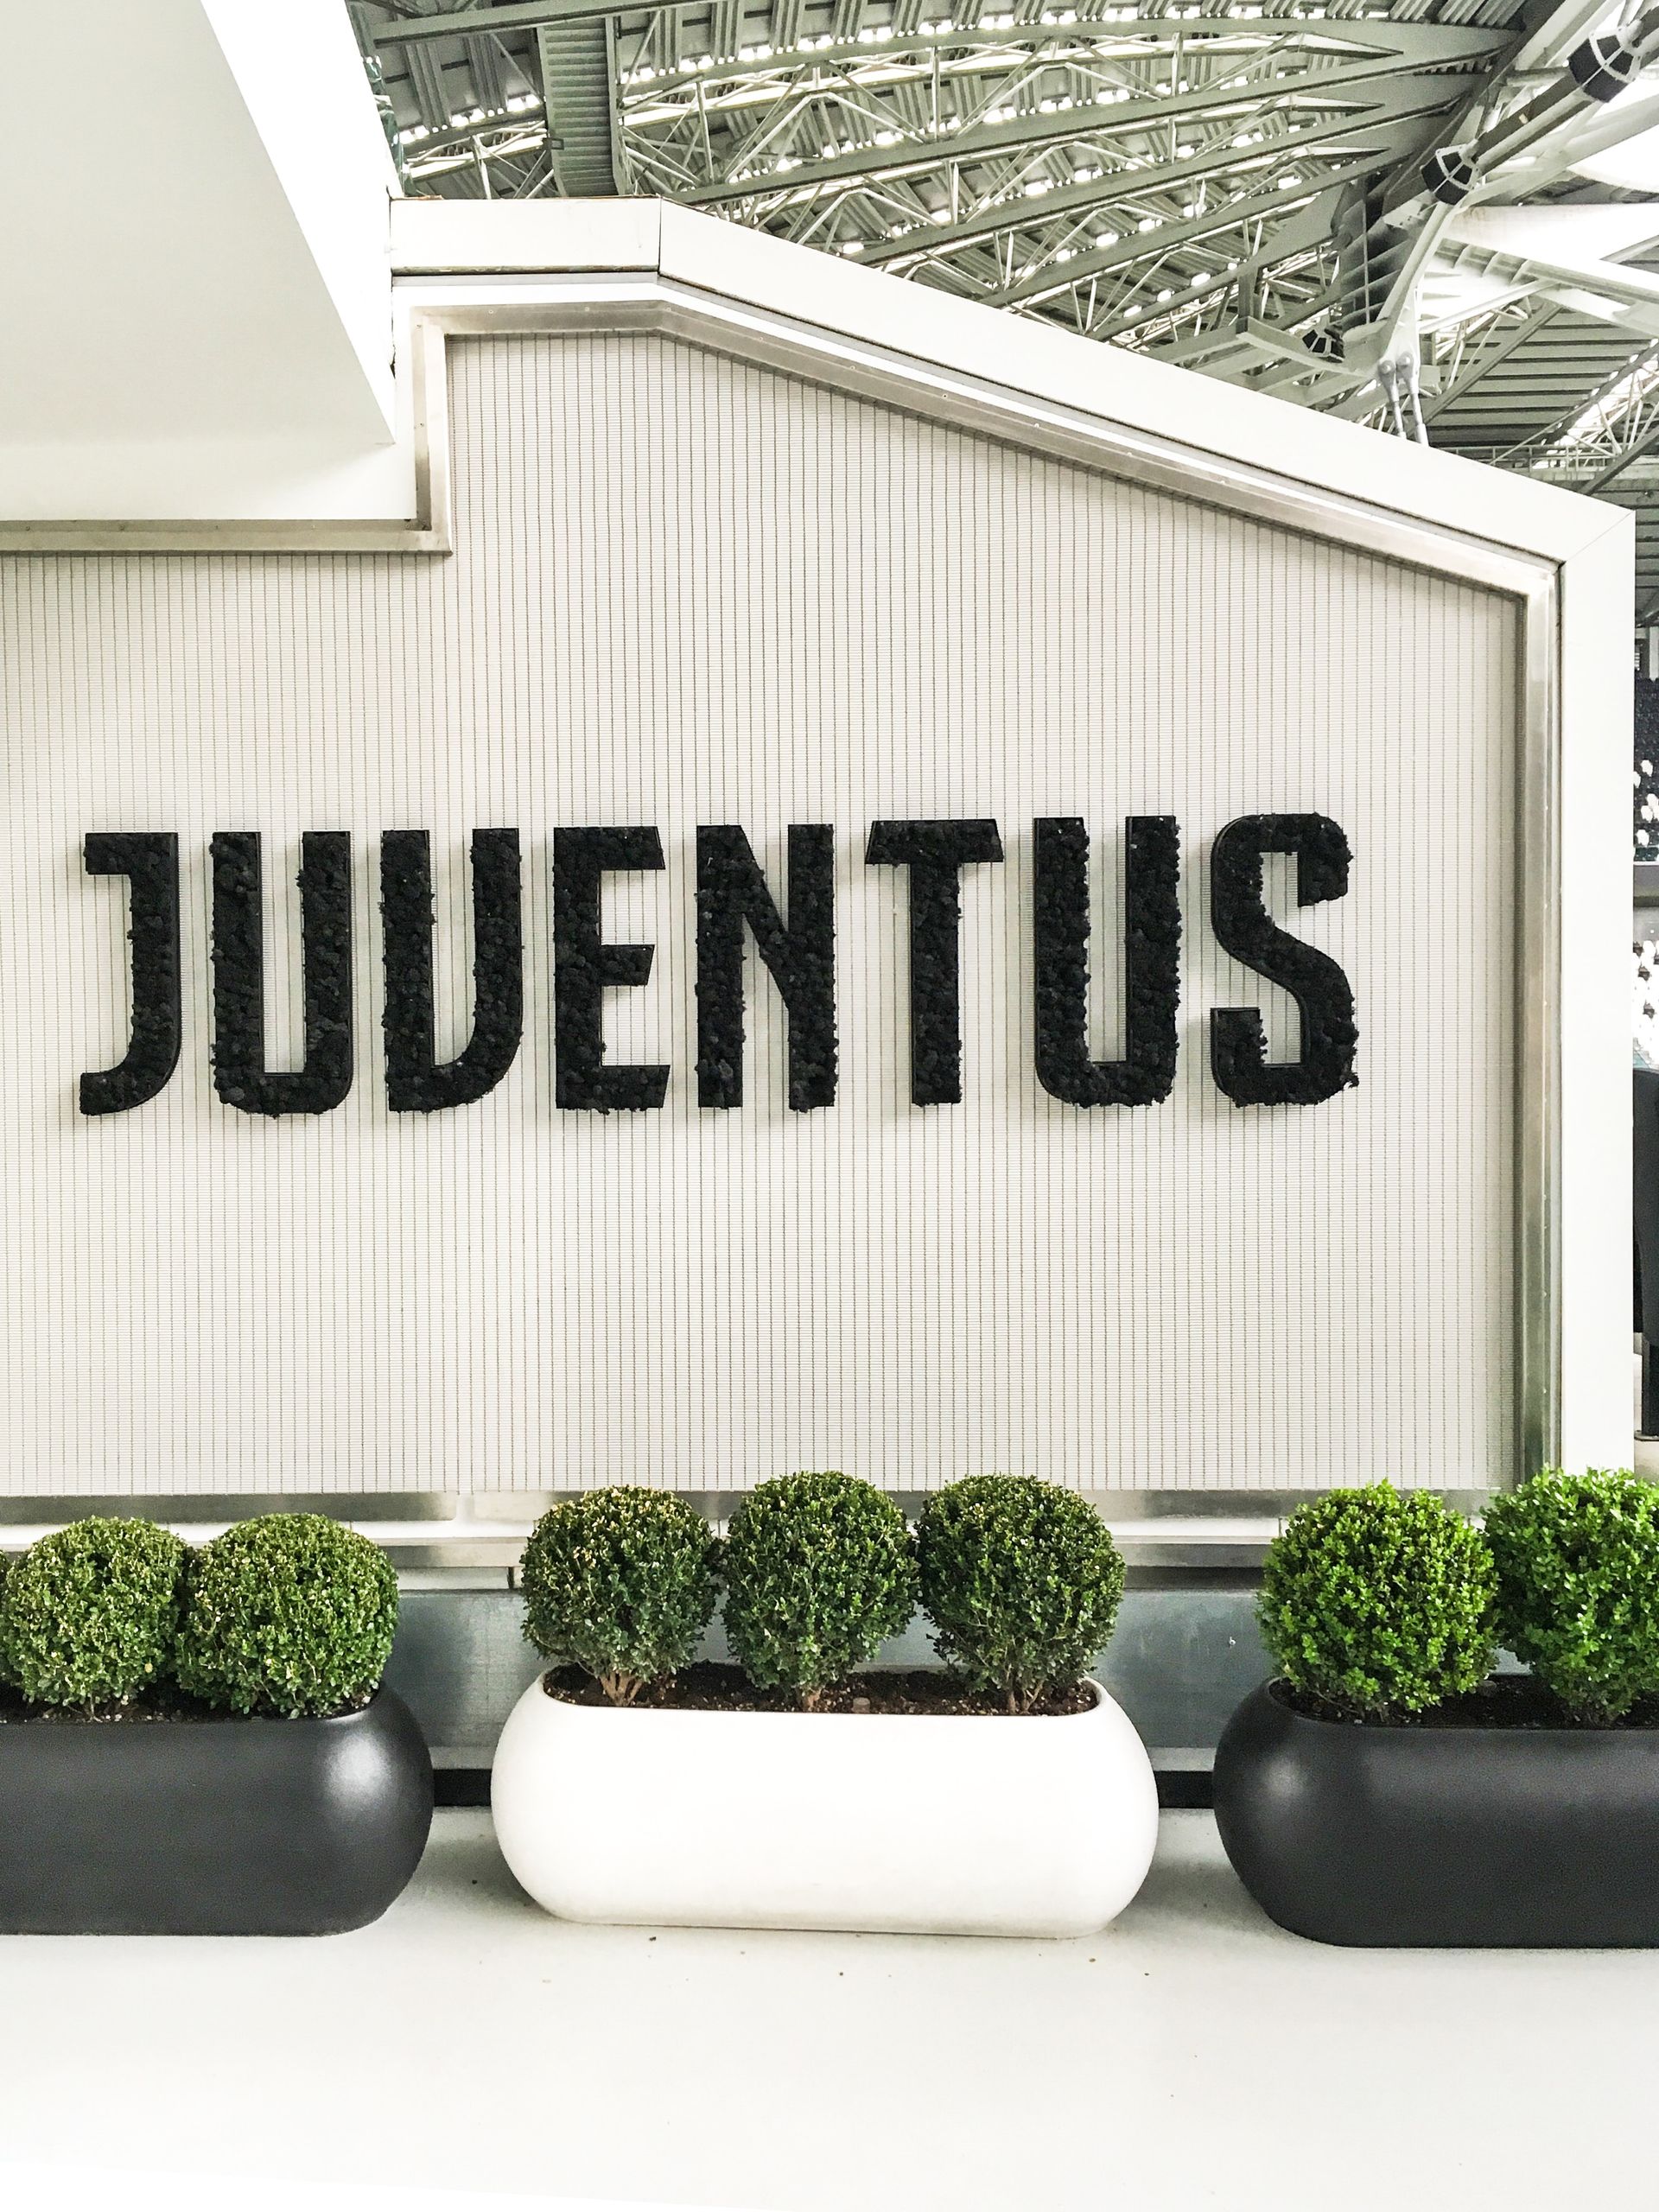 Juventus Museum